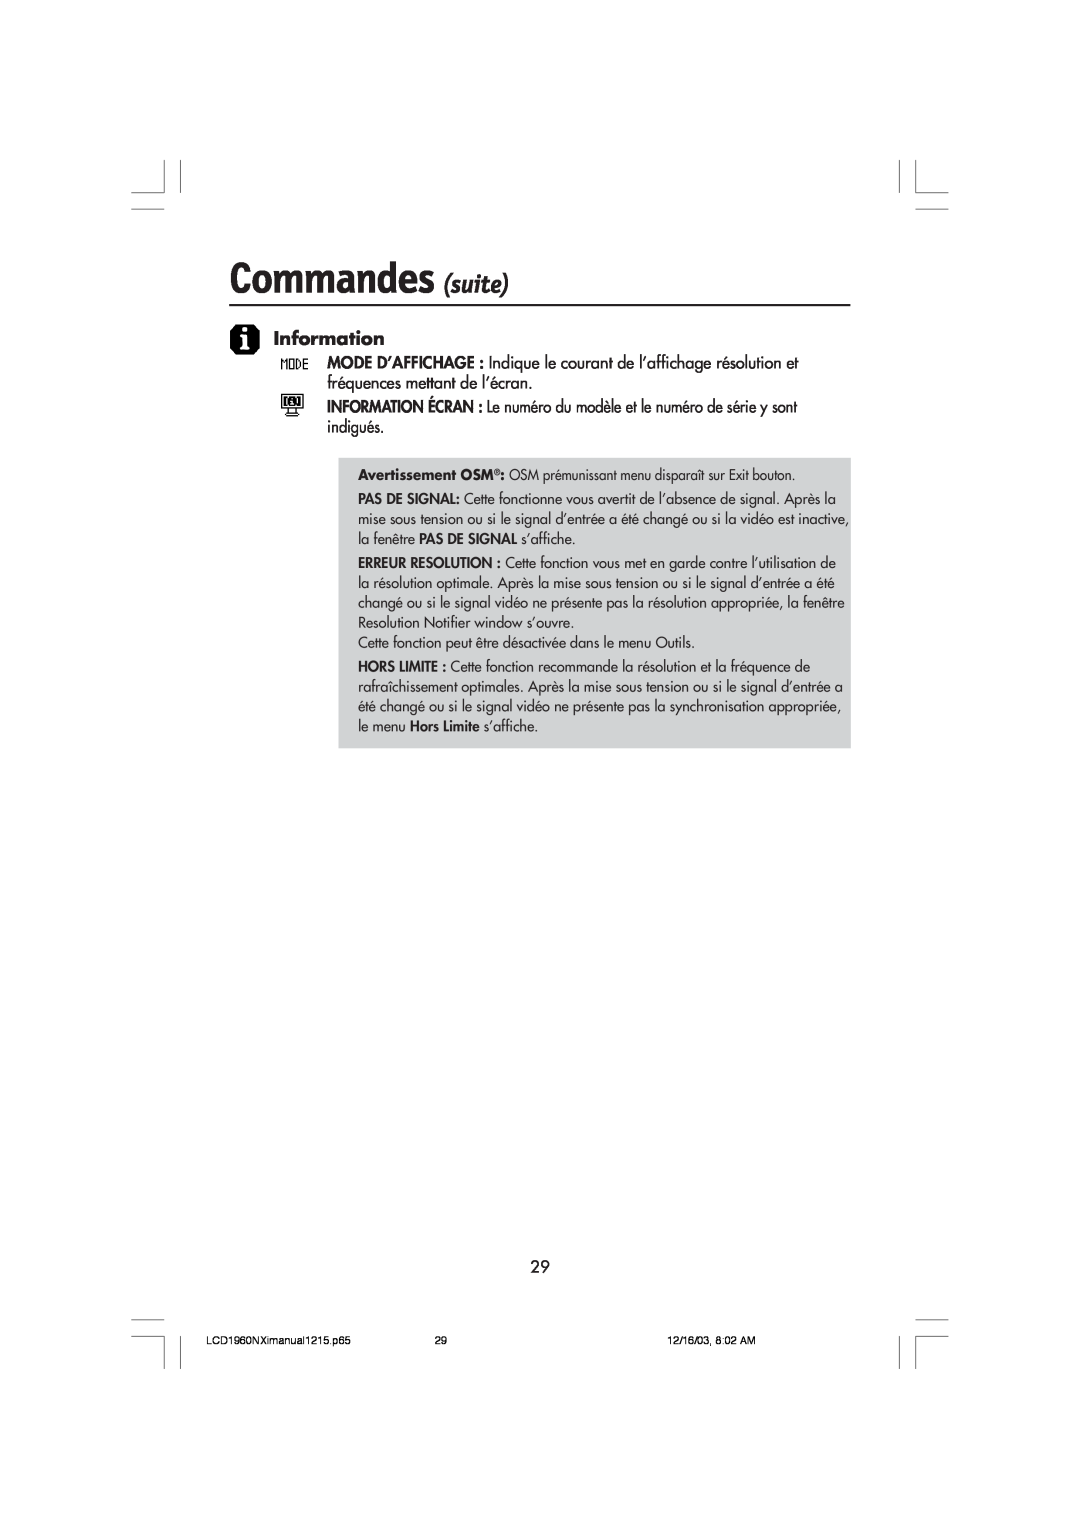 NEC LCD1960NXI manual Commandes suite, Information, Avertissement OSM OSM prŽmunissant menu dispara”t sur Exit bouton 